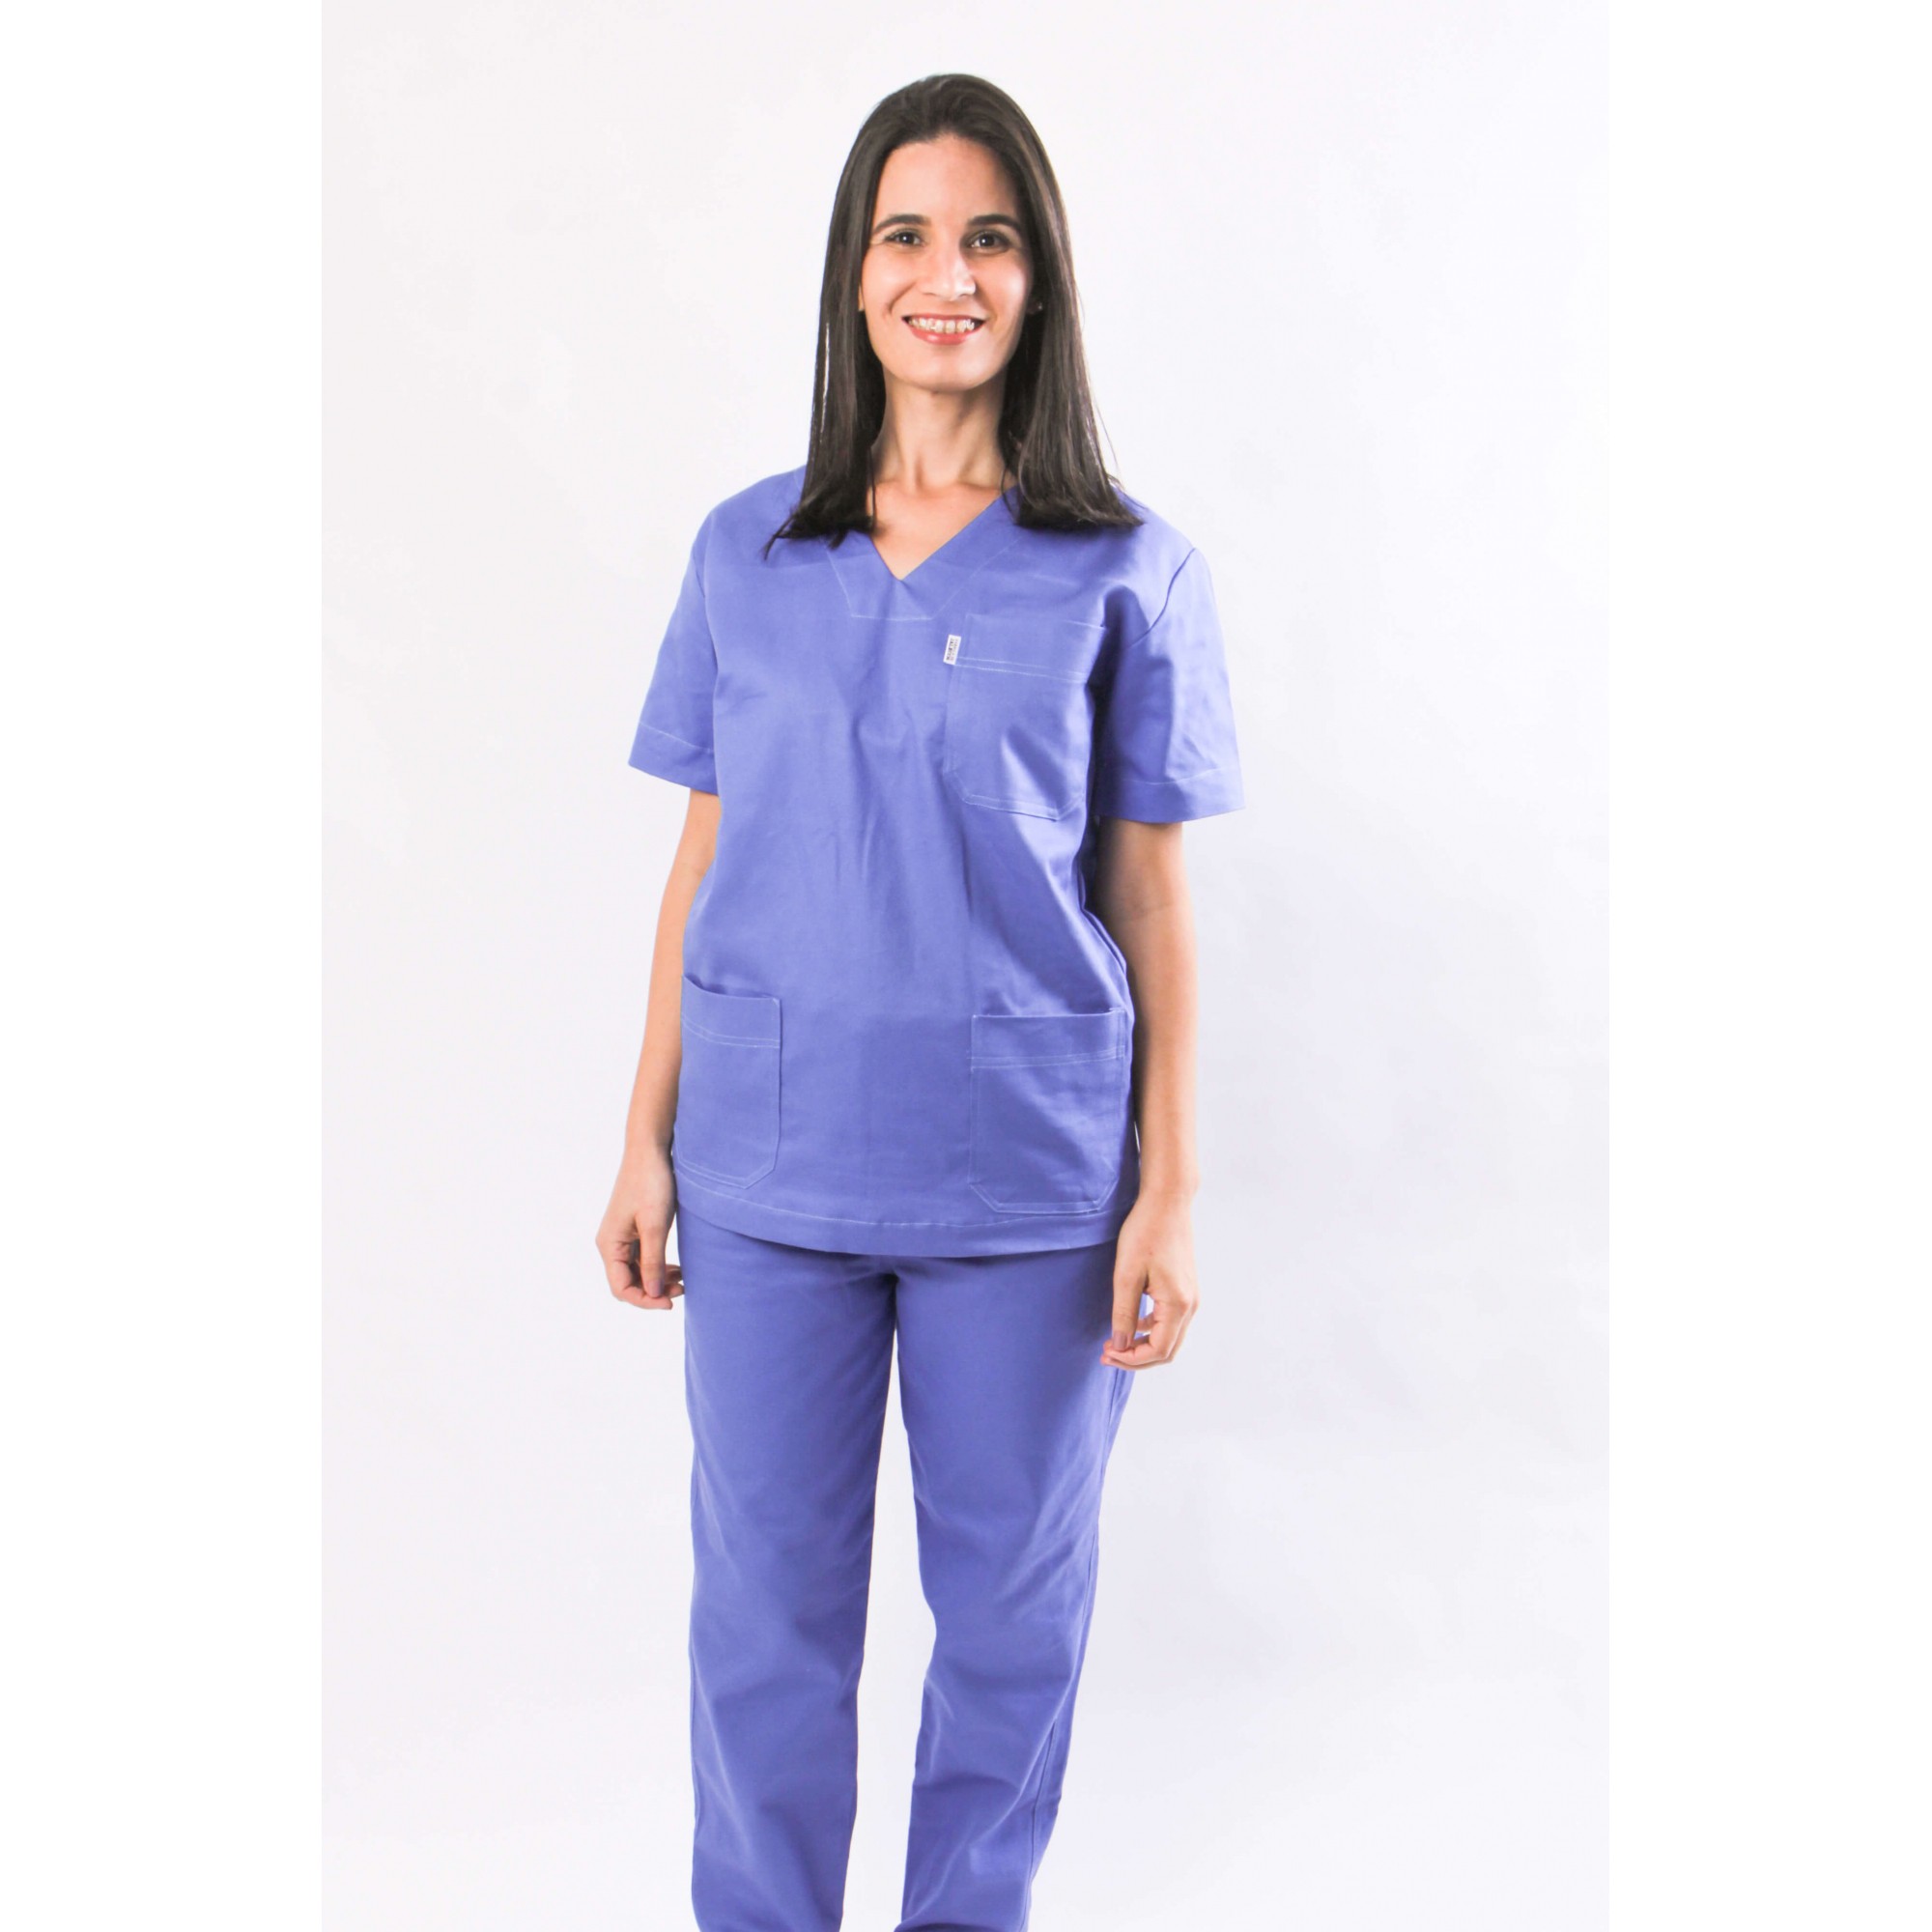 penance Morning exercises Profit Pijama Cirúrgico Azul em Brim 100% Algodão